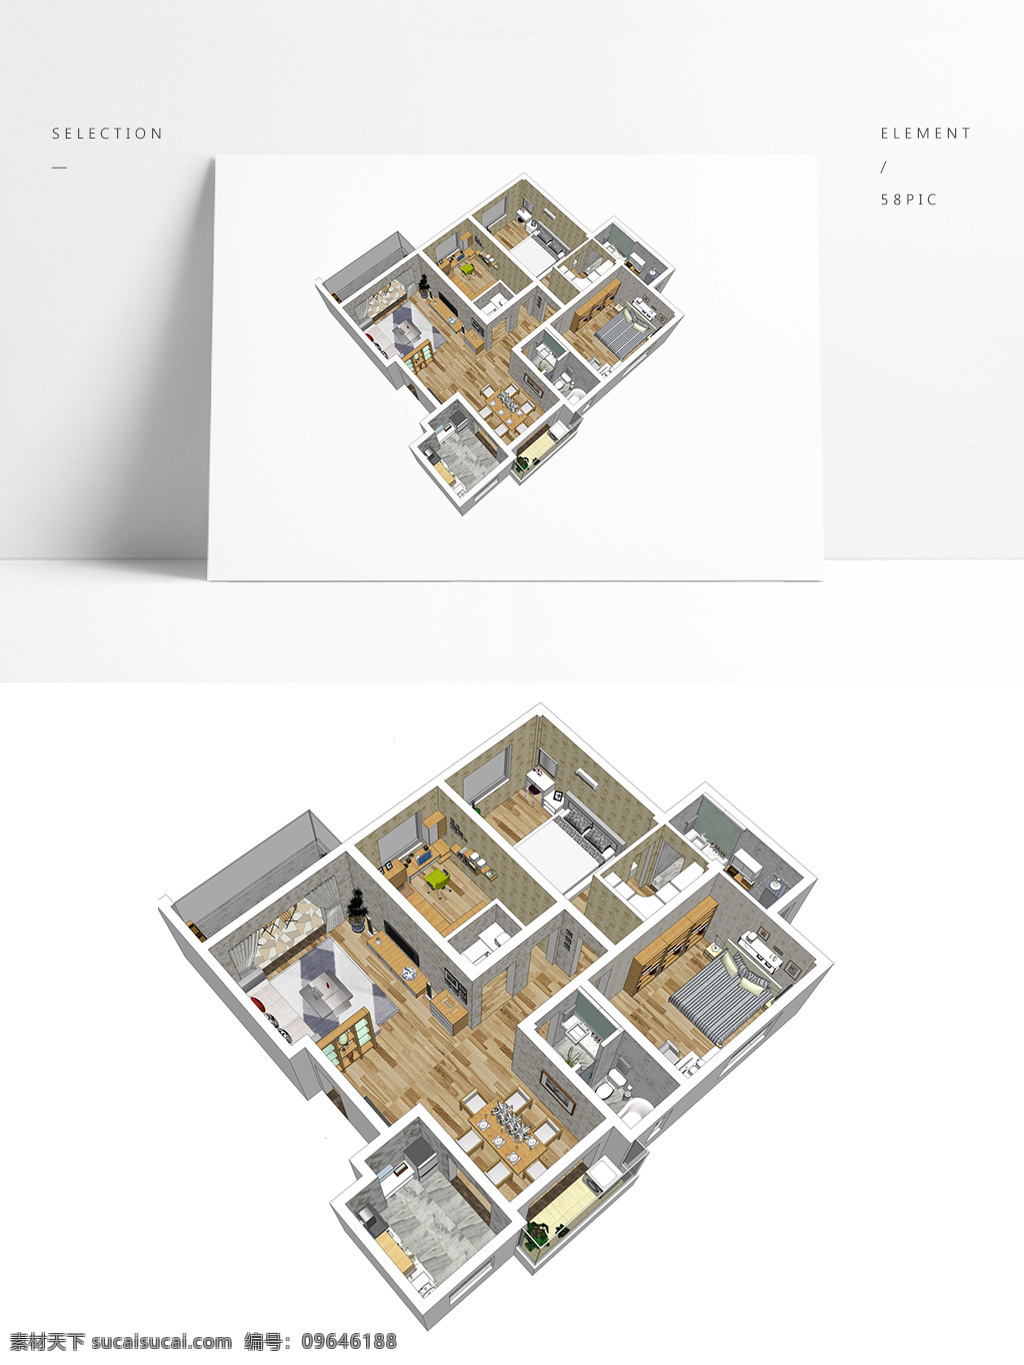 日式 风格 住宅 su 透视 模型 室内空间设计 住宅室内设计 样板房 3d模型 su模型 草图大师模型 家具模型